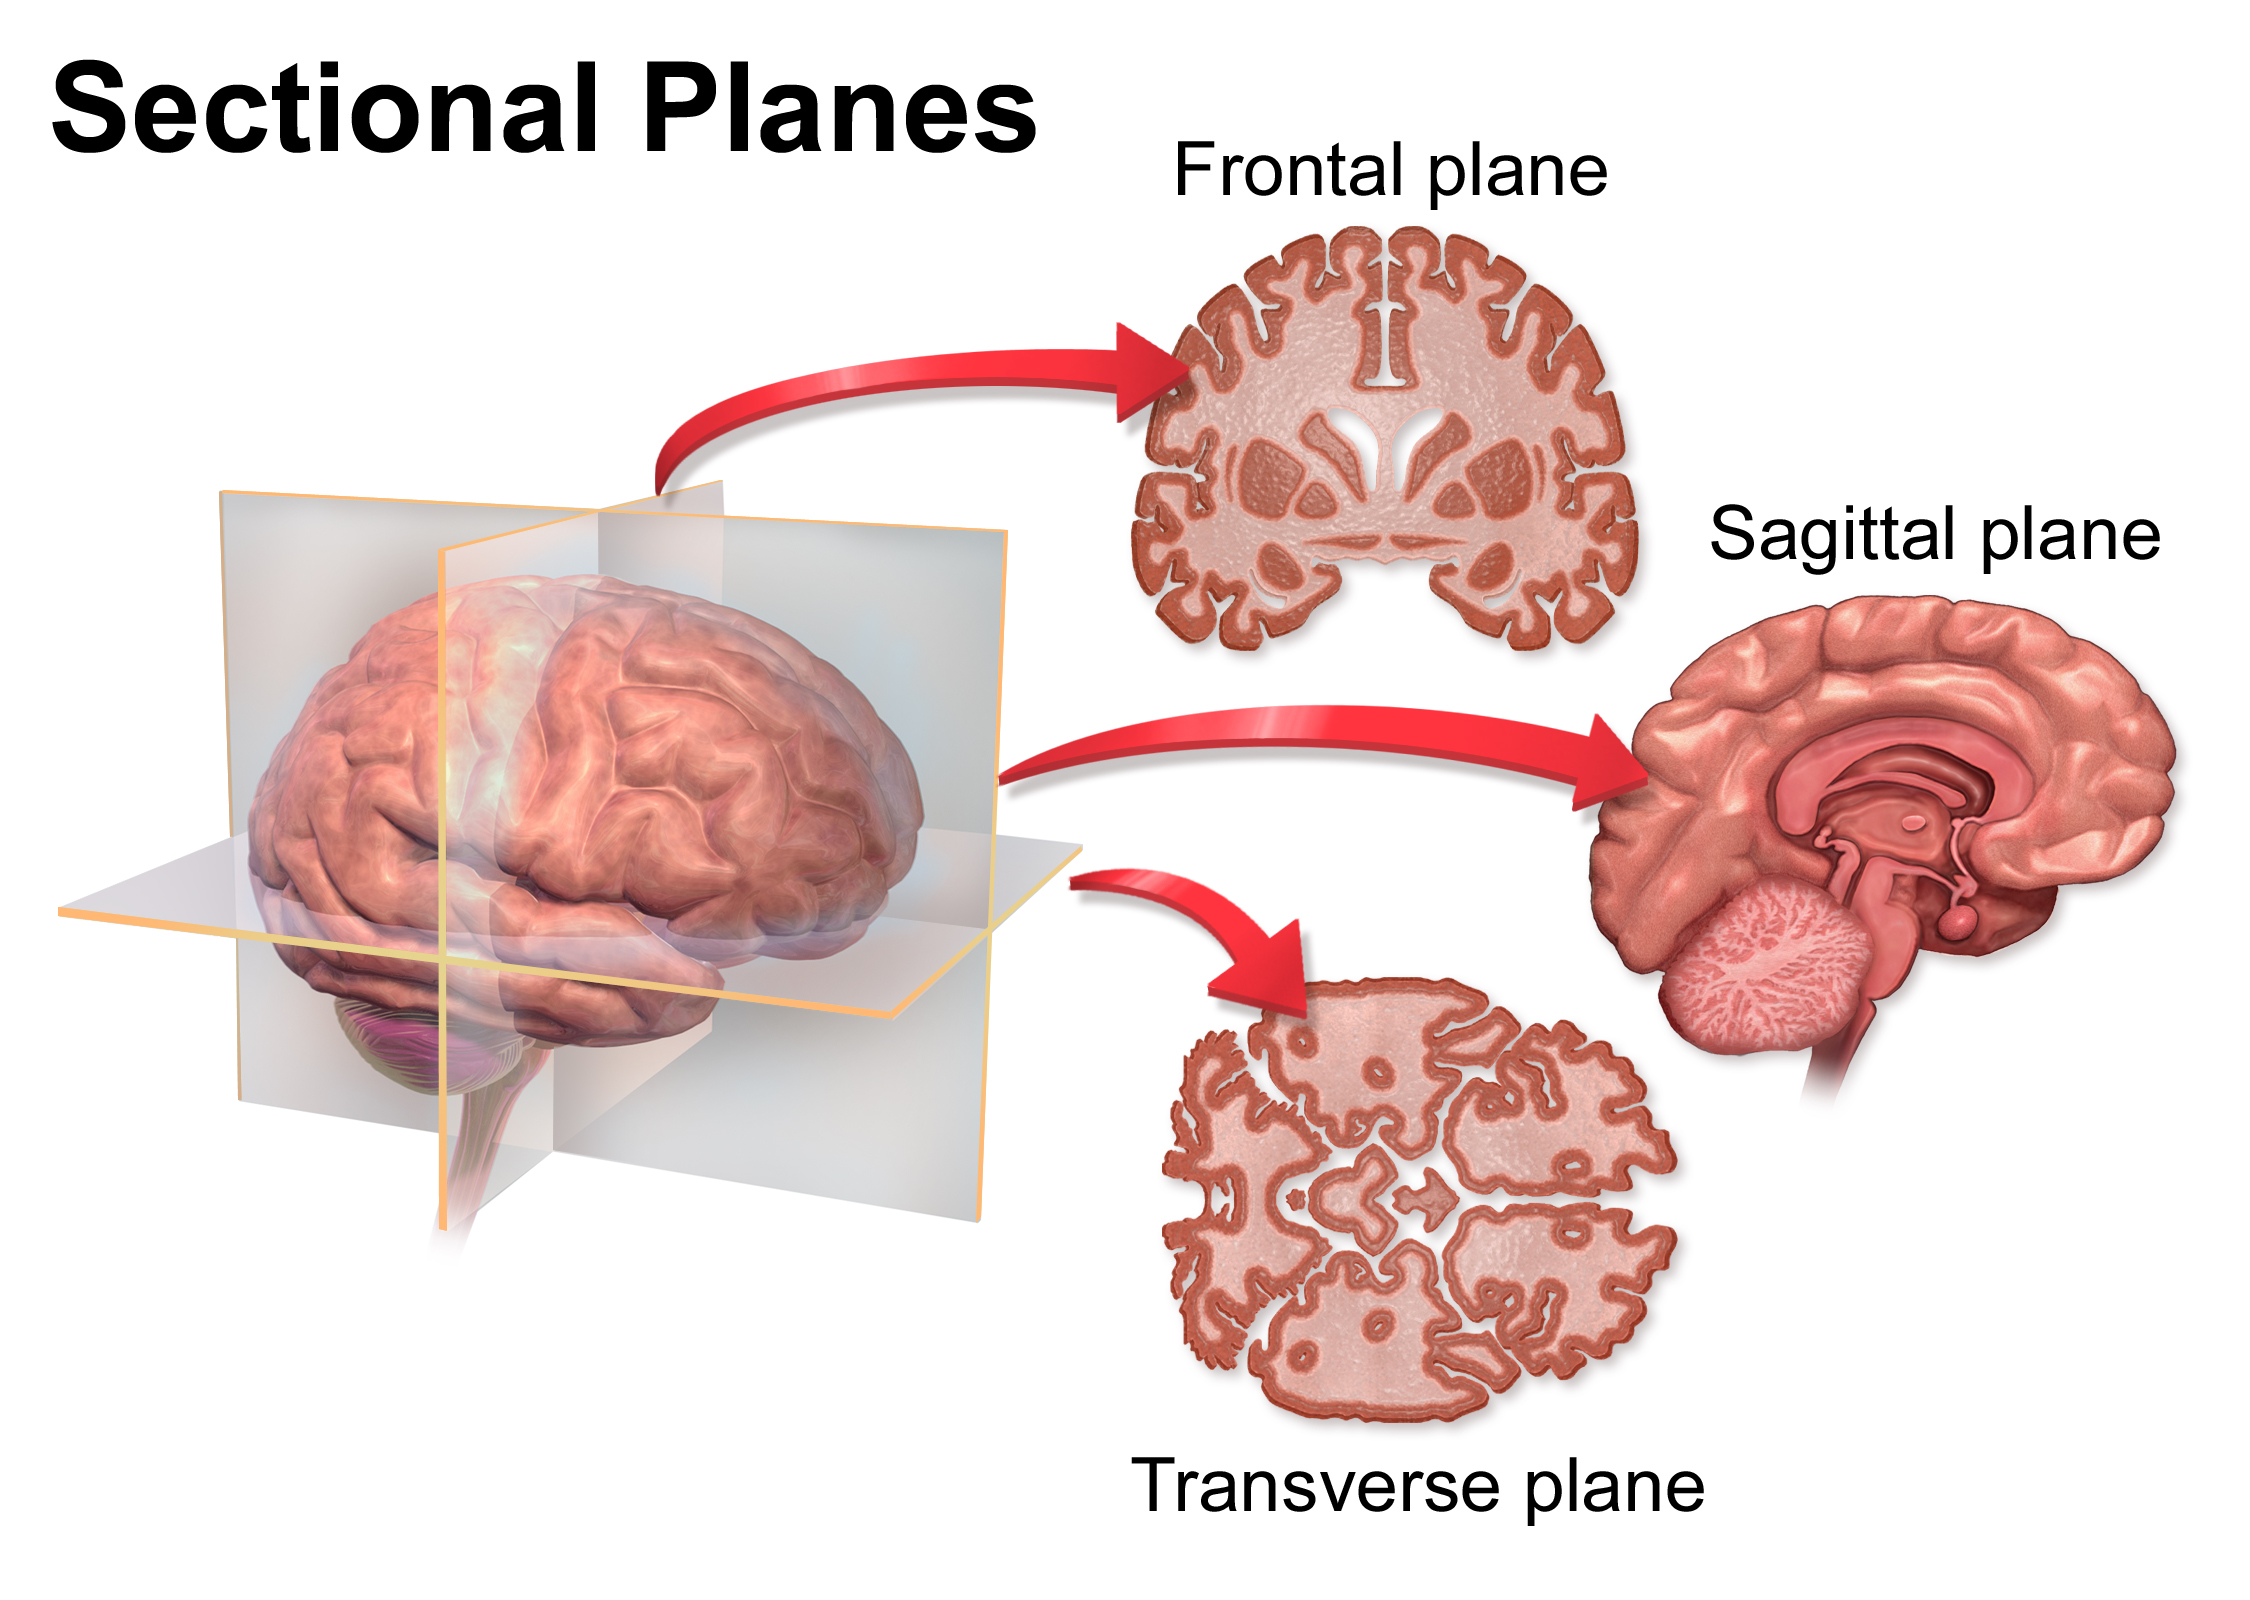 Diagrama de planos seccionales a través del cerebro humano: frontal, sagital y transversal.